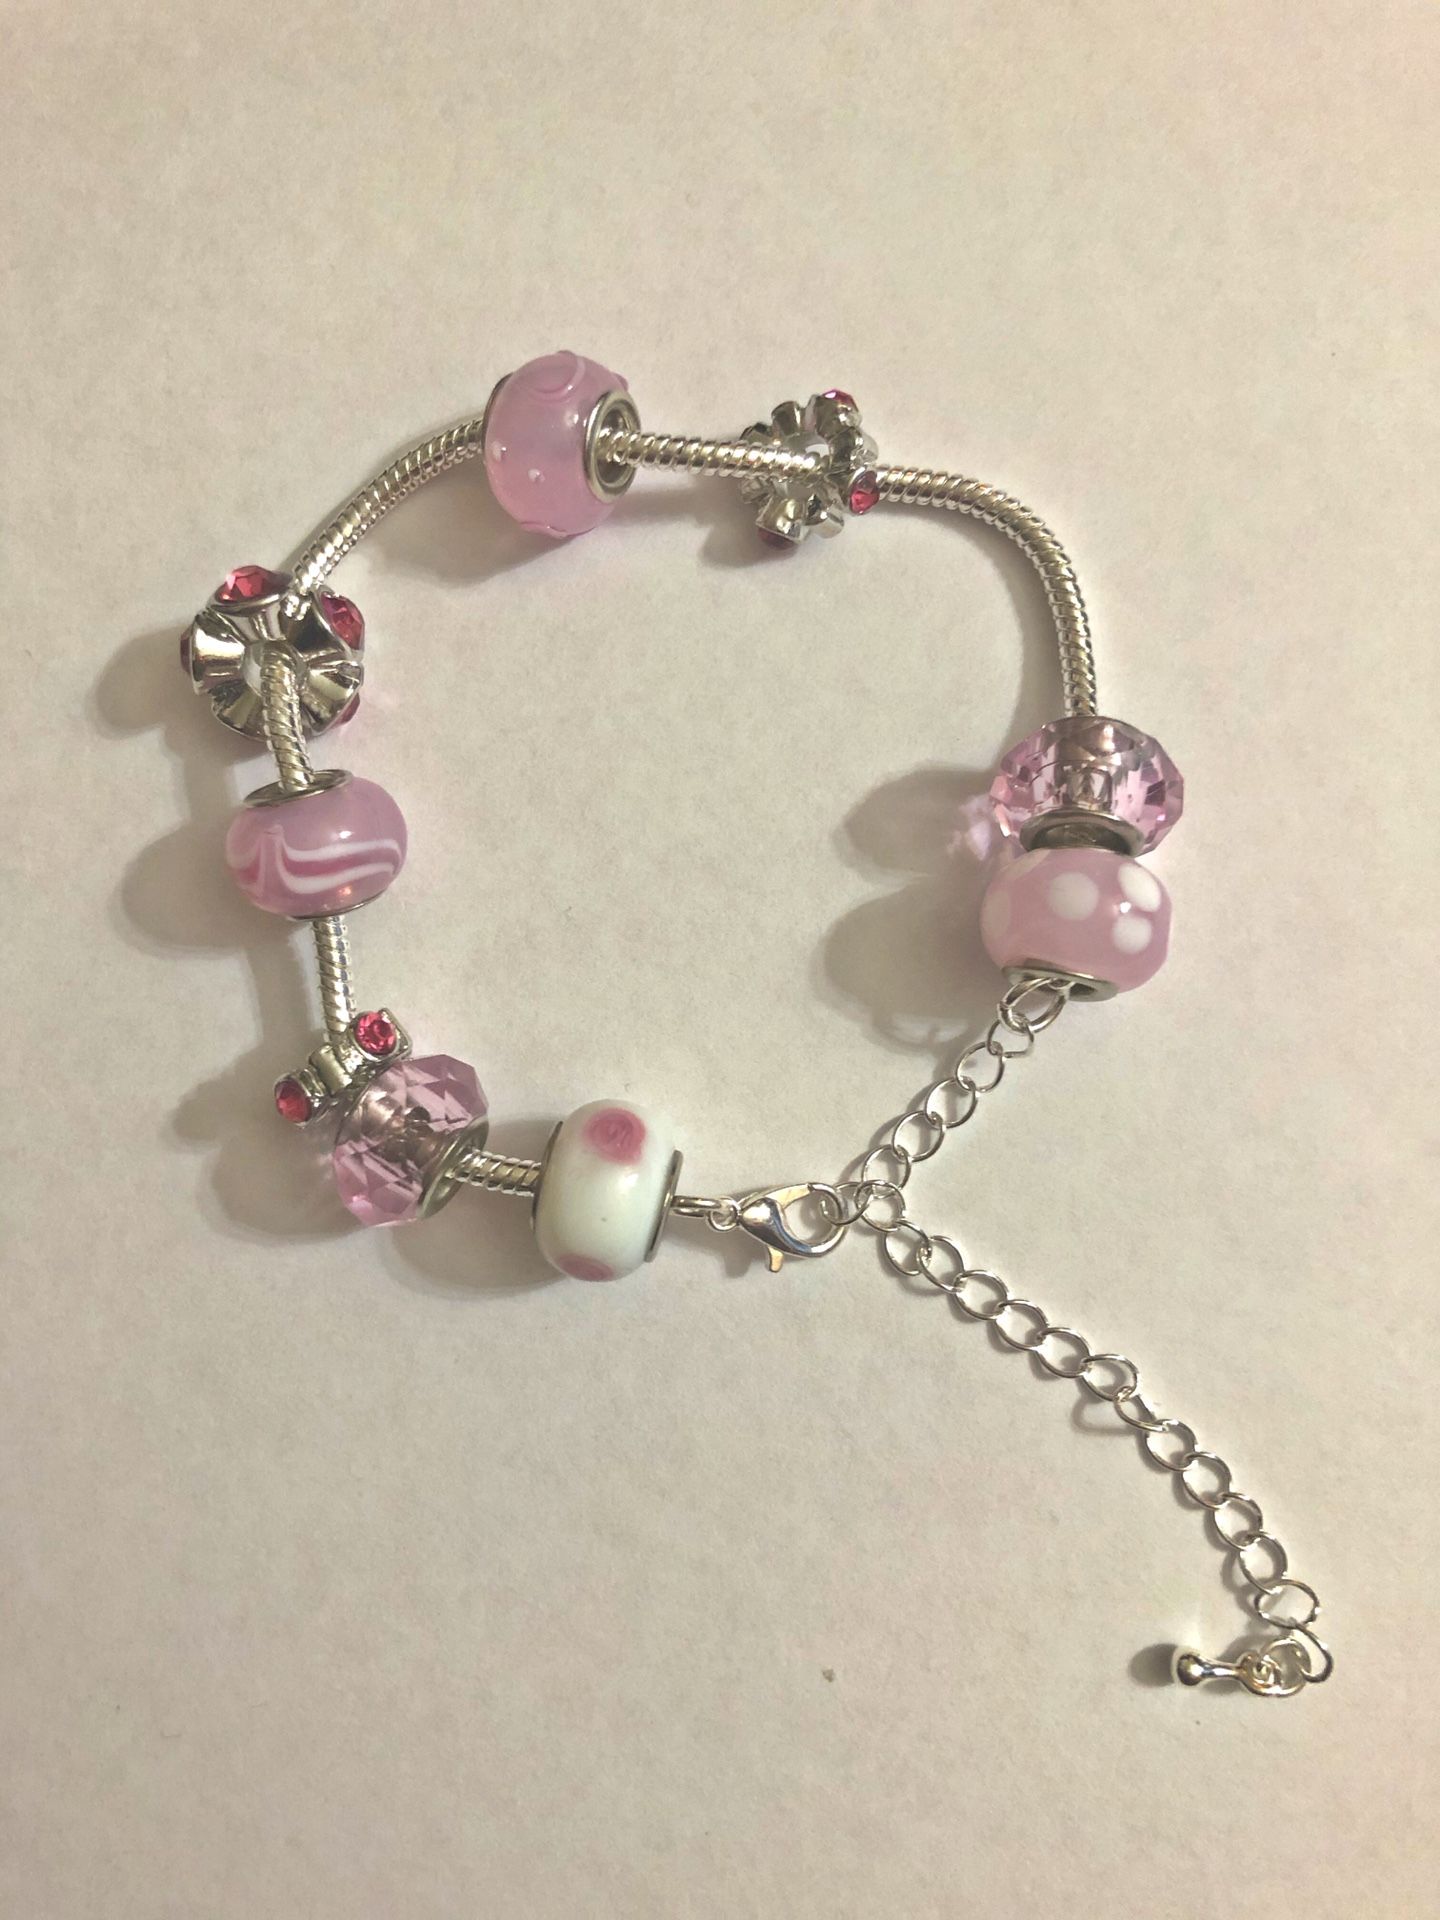 Blossom charm bracelet